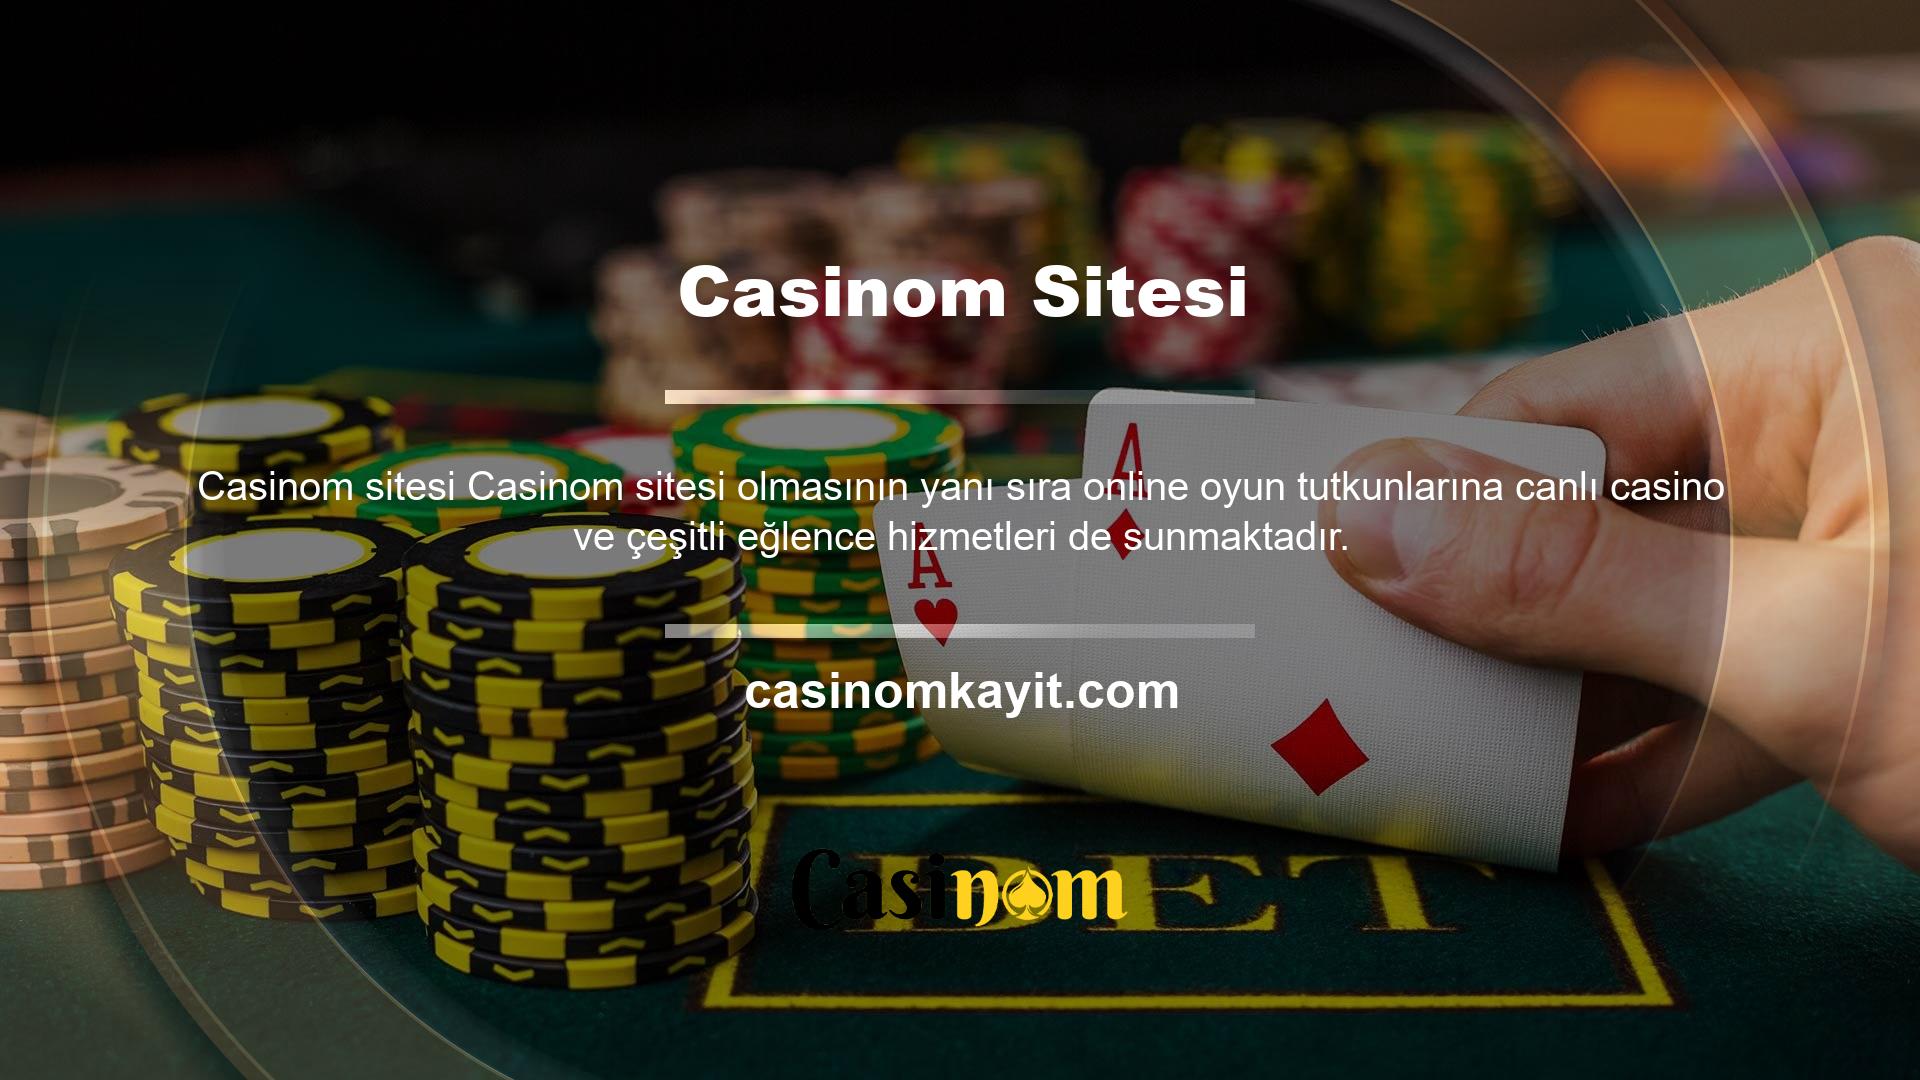 Casinom web sitesi aracılığıyla tüm spor dalları ve liglerdeki maçlara bahis oynayabilir ve ayrıca Casinom canlı bahis oyunlarının keyfini çıkarabilirsiniz